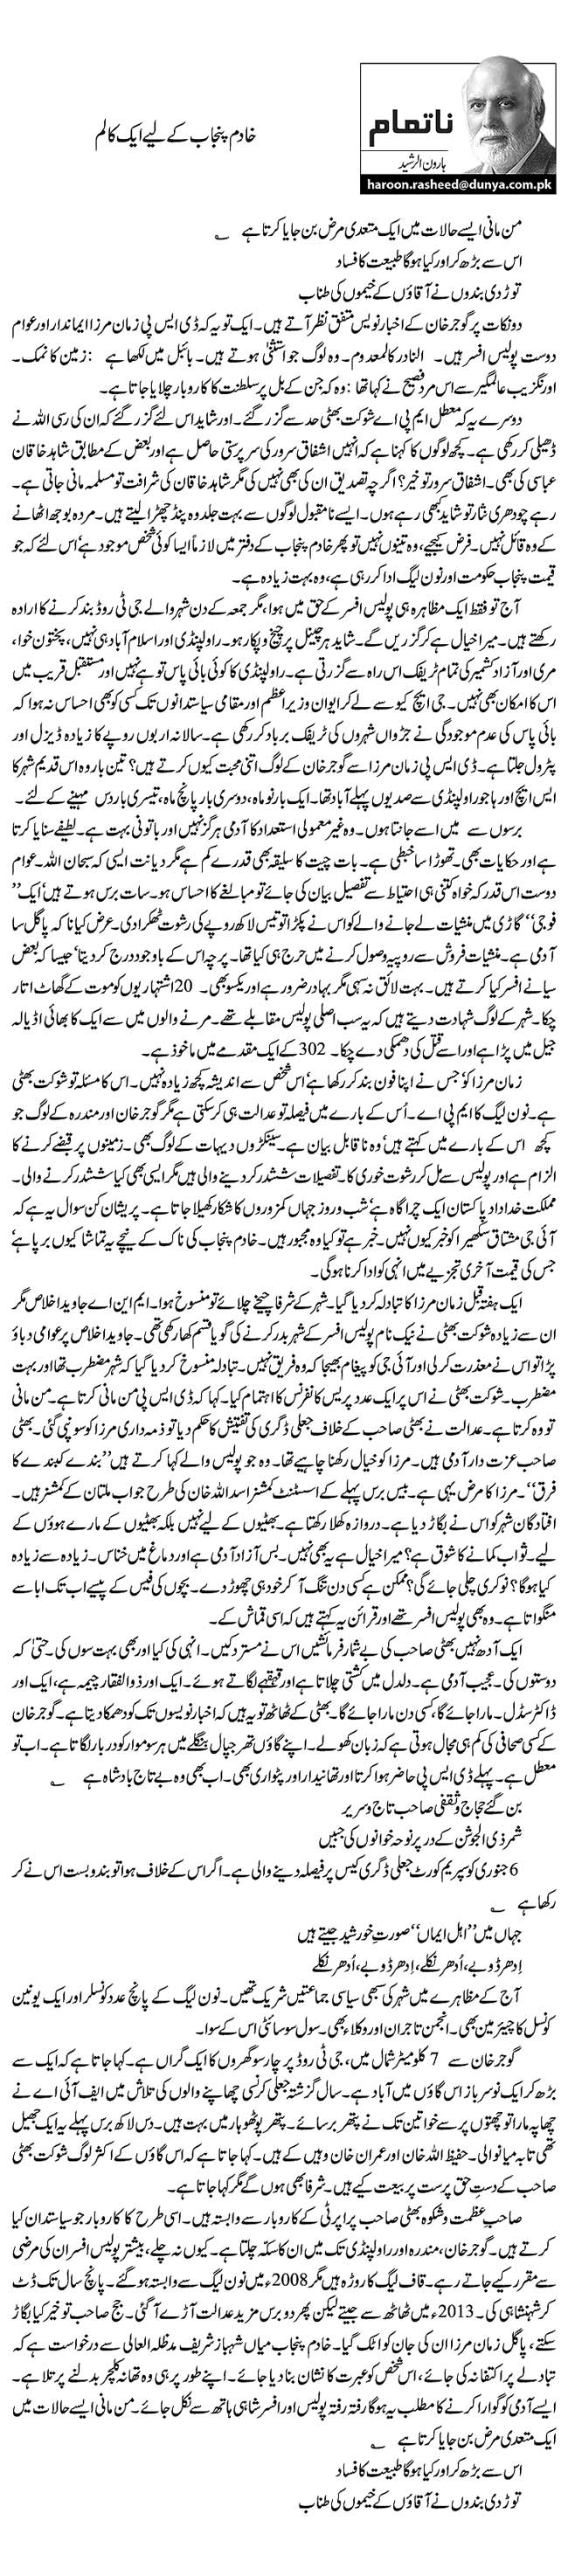 Khadim e punjab kay liye ek column By Haroon ur Rasheed